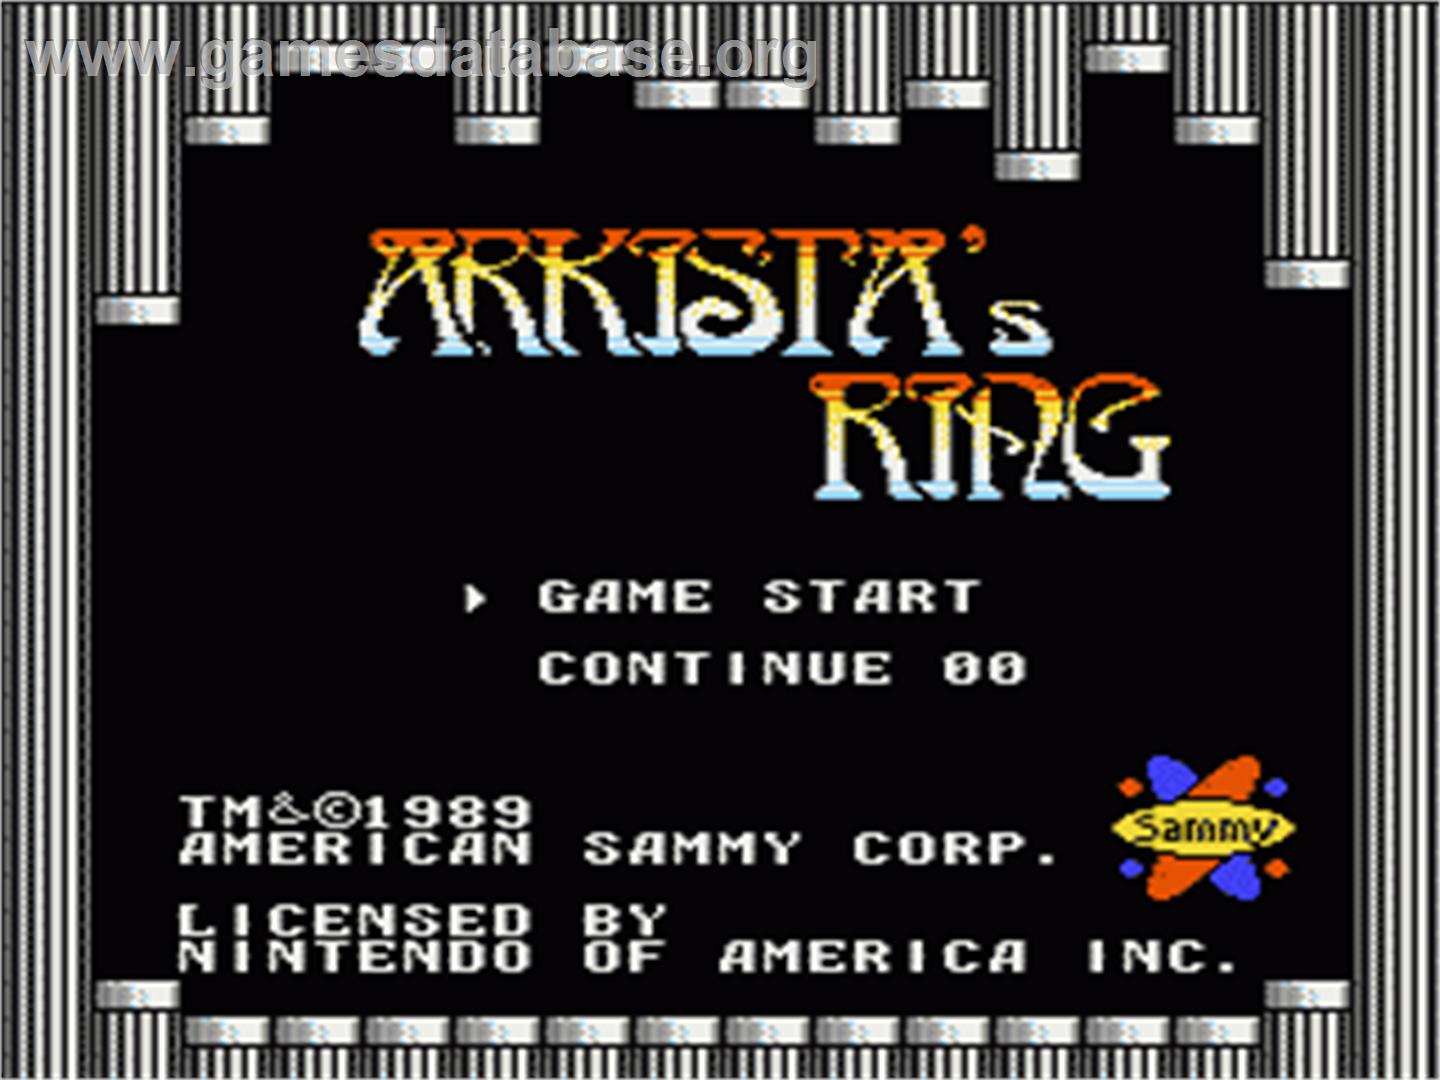 Arkista's Ring - Nintendo NES - Artwork - Title Screen